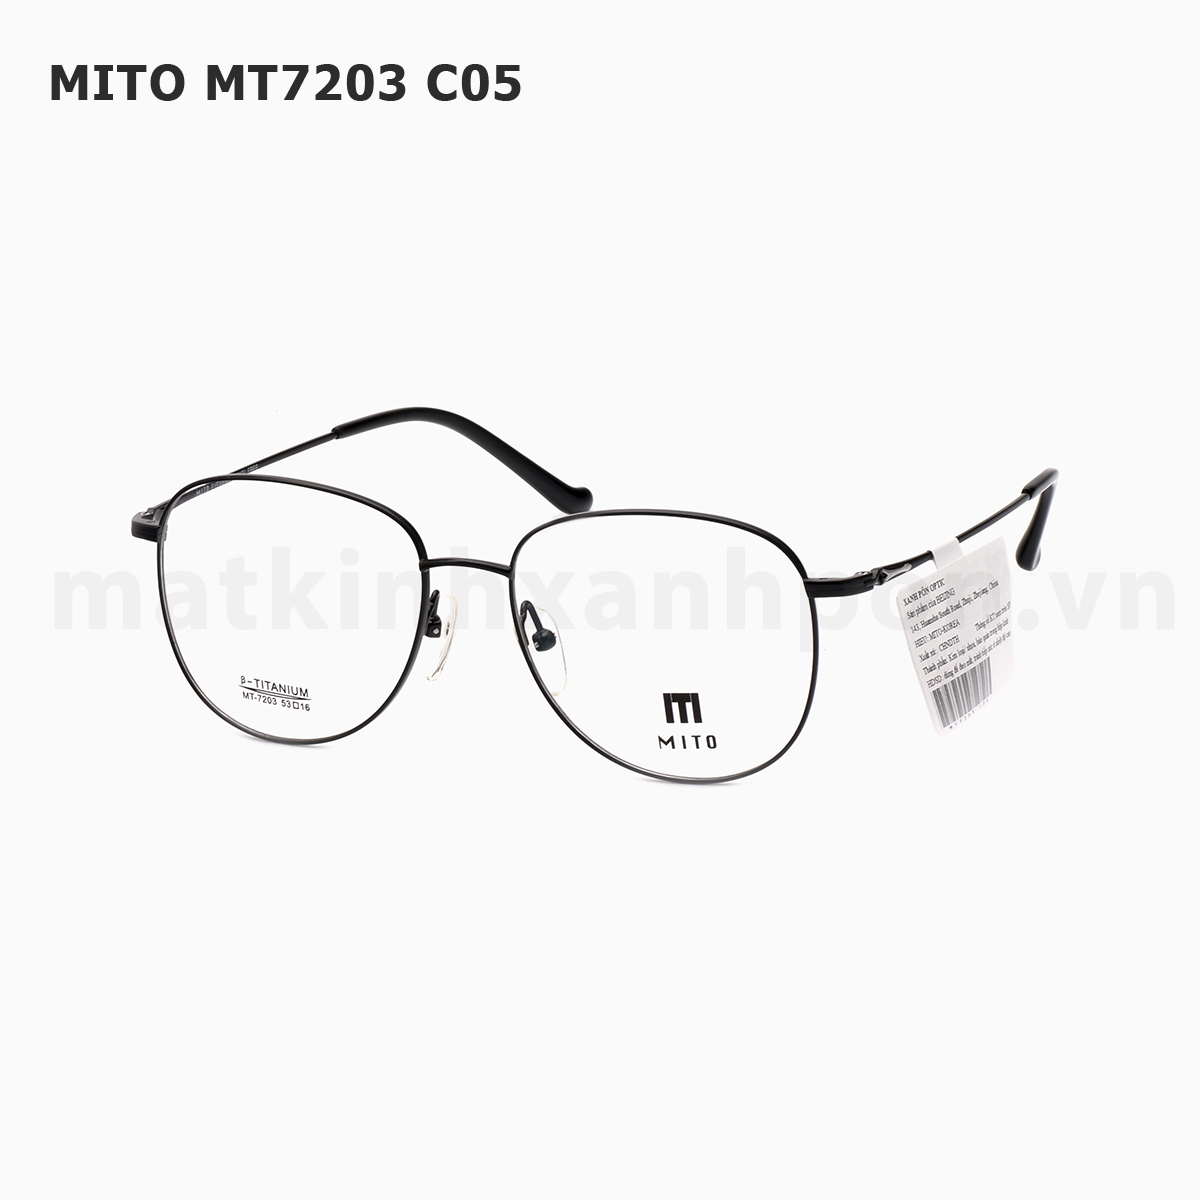 Mito MT7203 C05